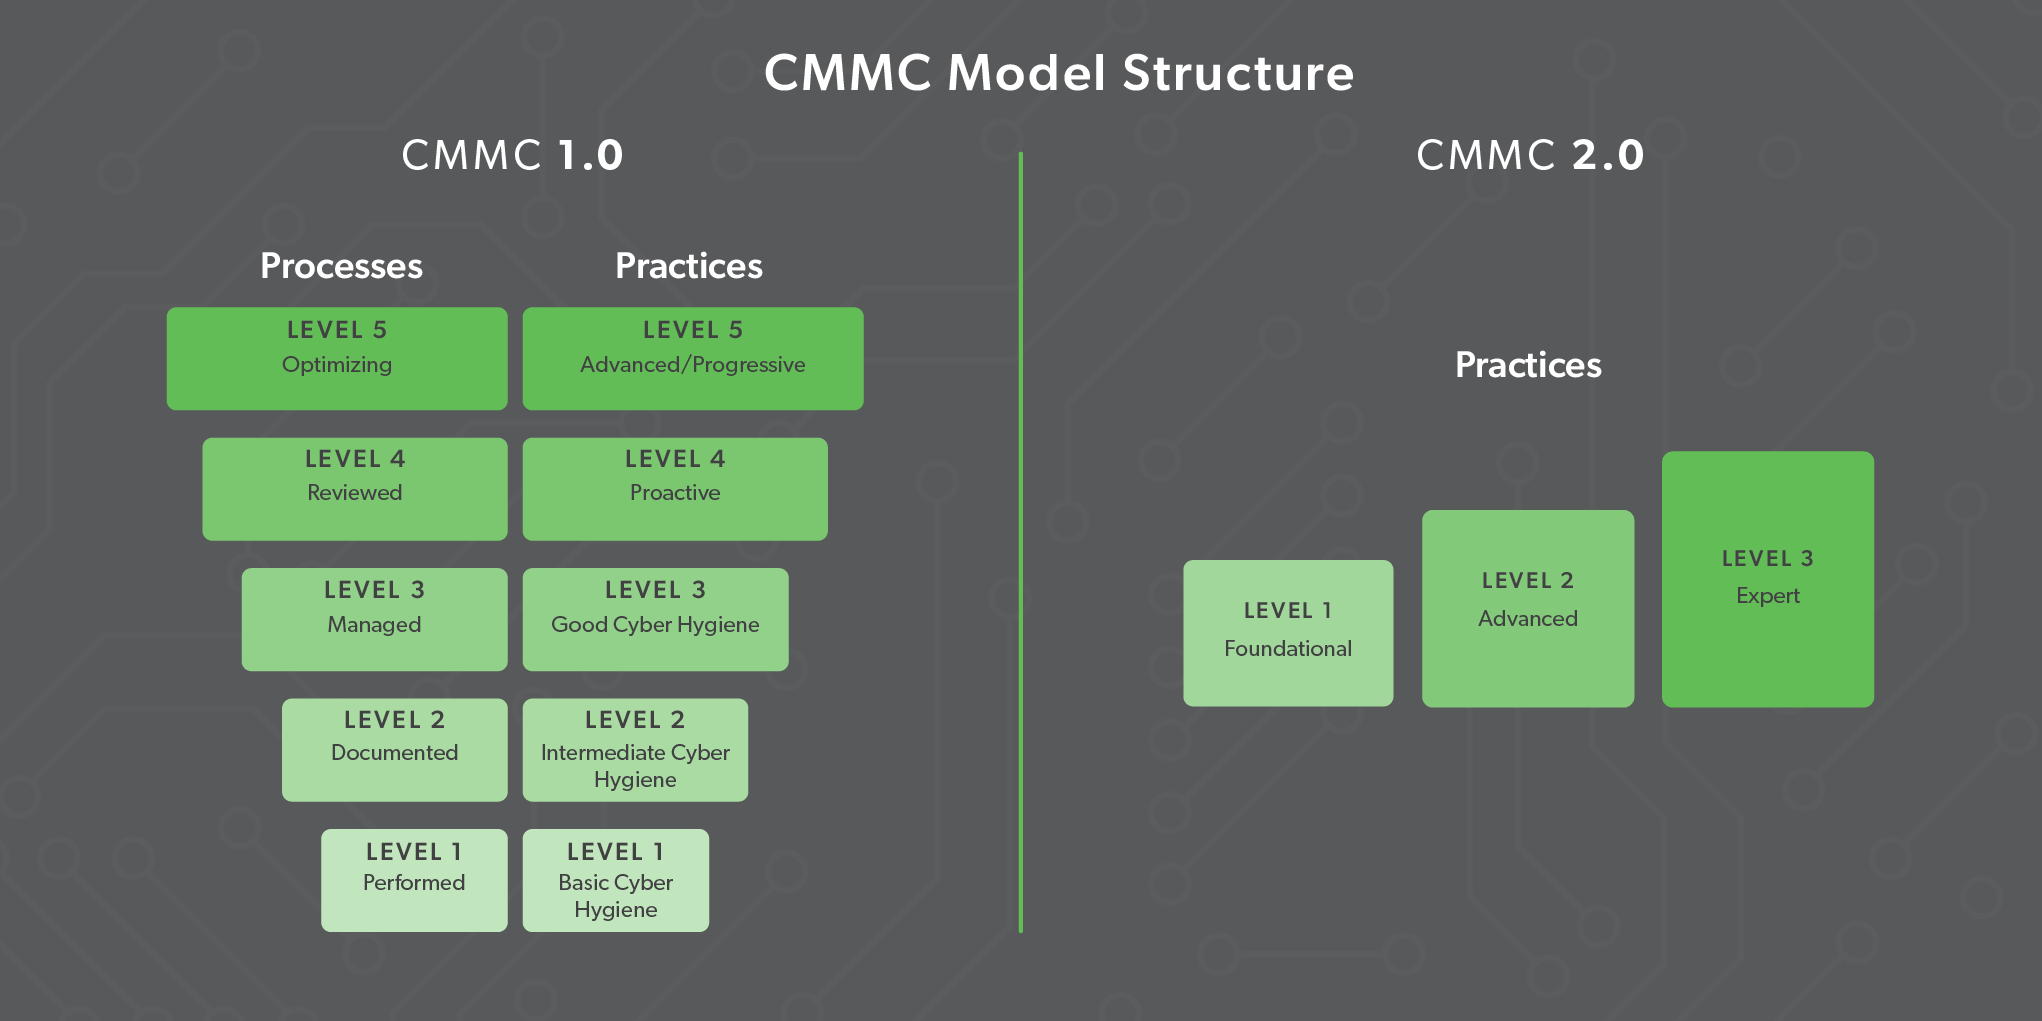 CMMC 2.0 has 3 Levels